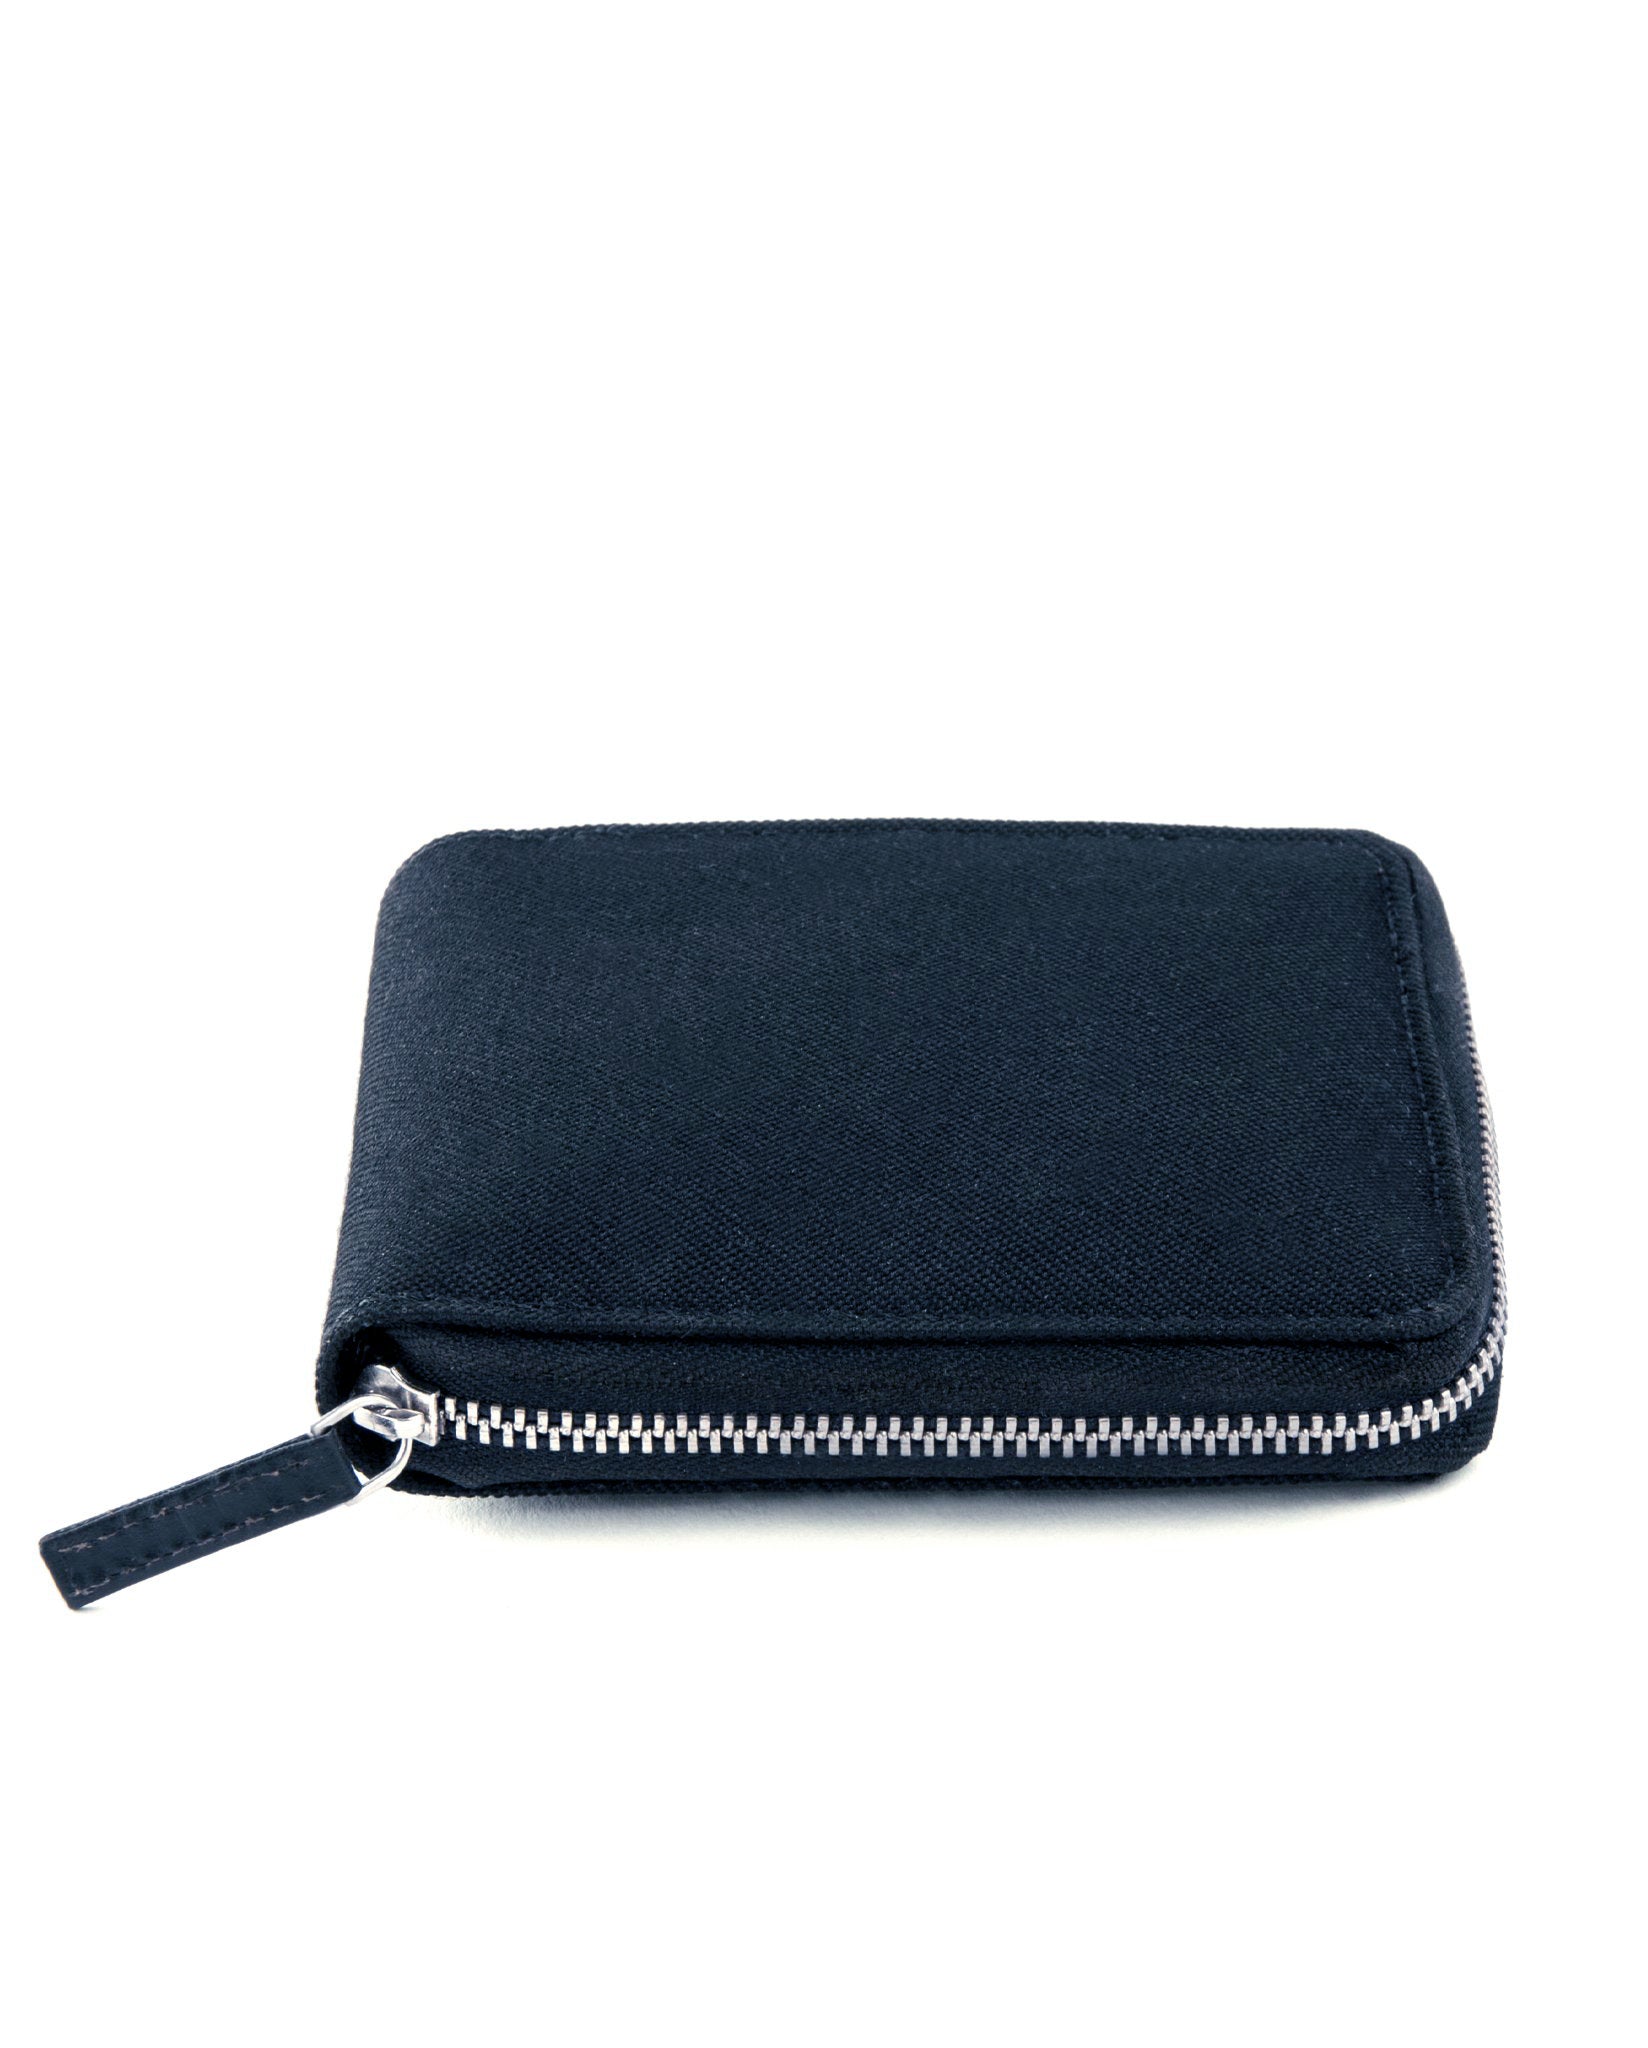 dothebag accessories wallet zip M